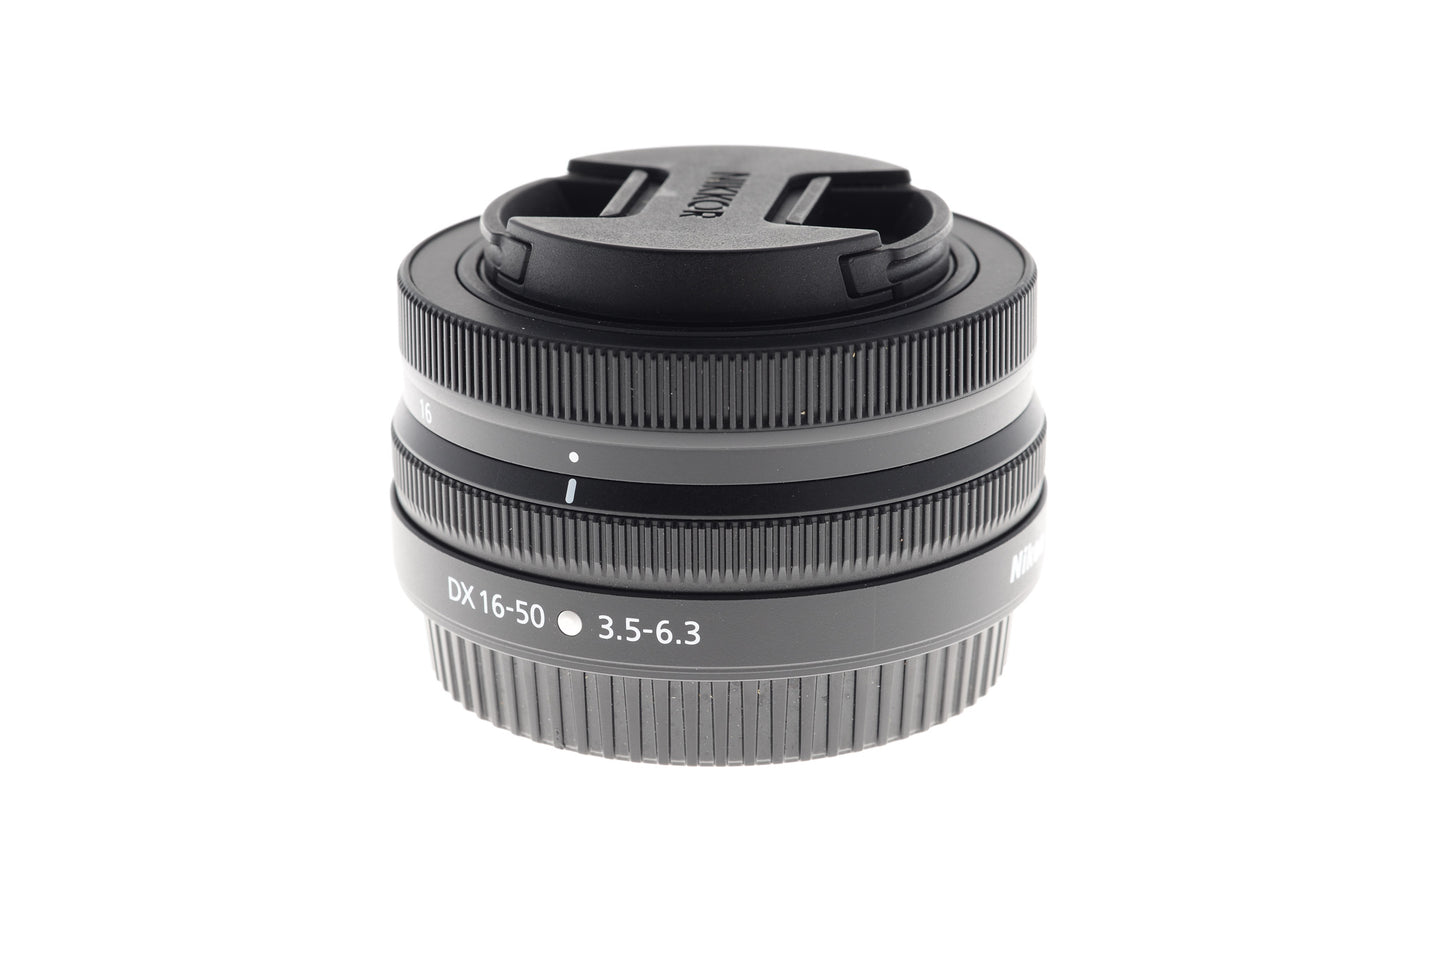 Nikon 16-50mm f3.5-6.3 Z DX VR Nikkor - Lens